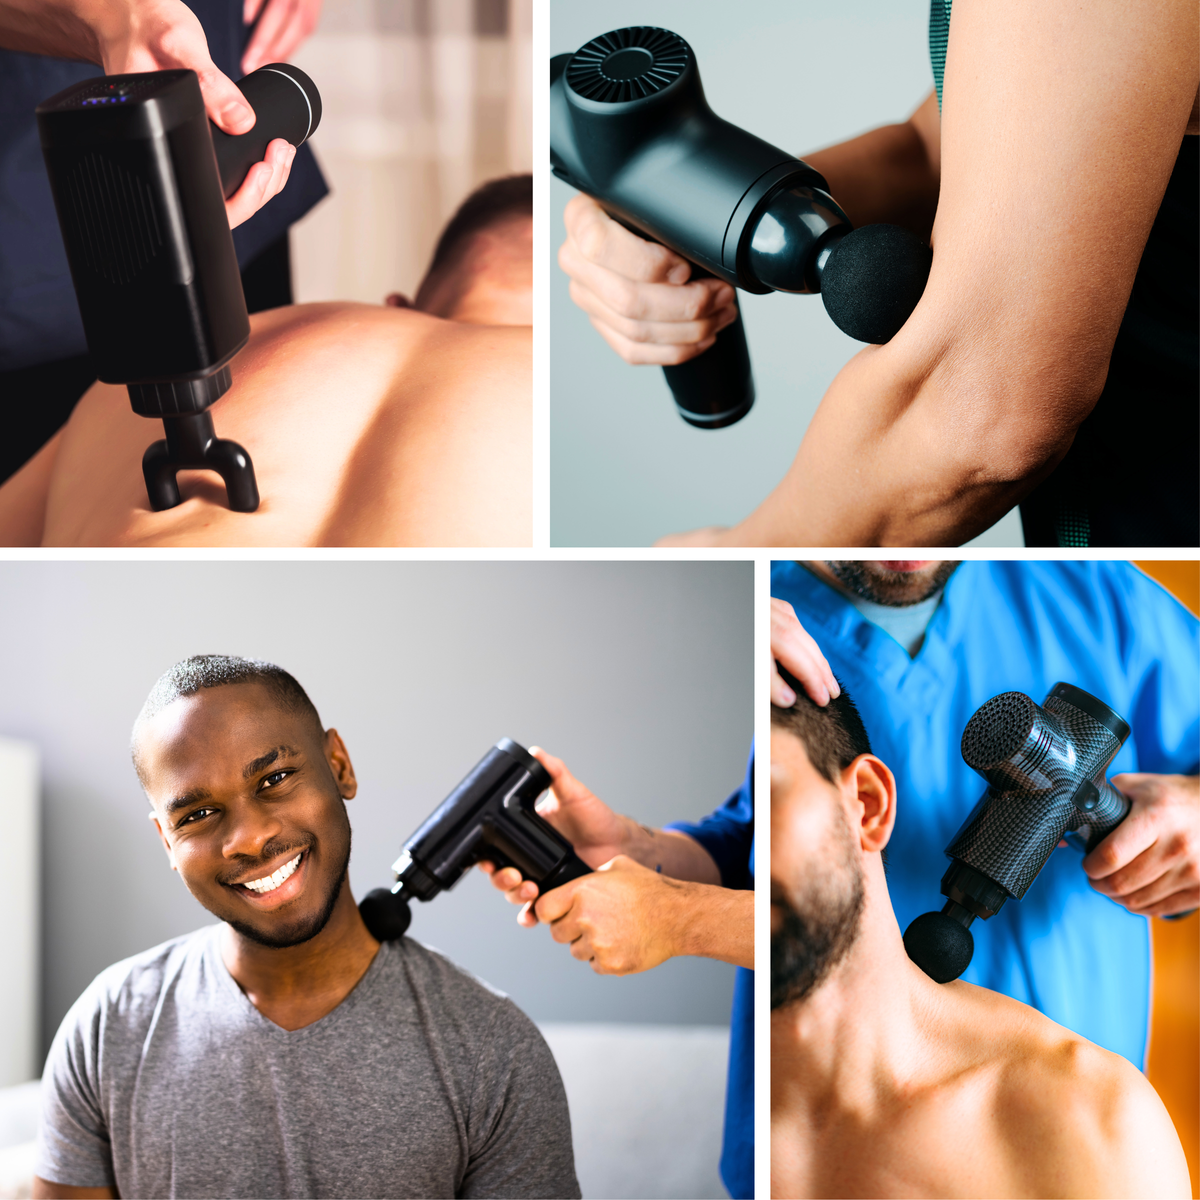 Using massage gun on back, using massage gun on arm muscle, having a massage gun treatment